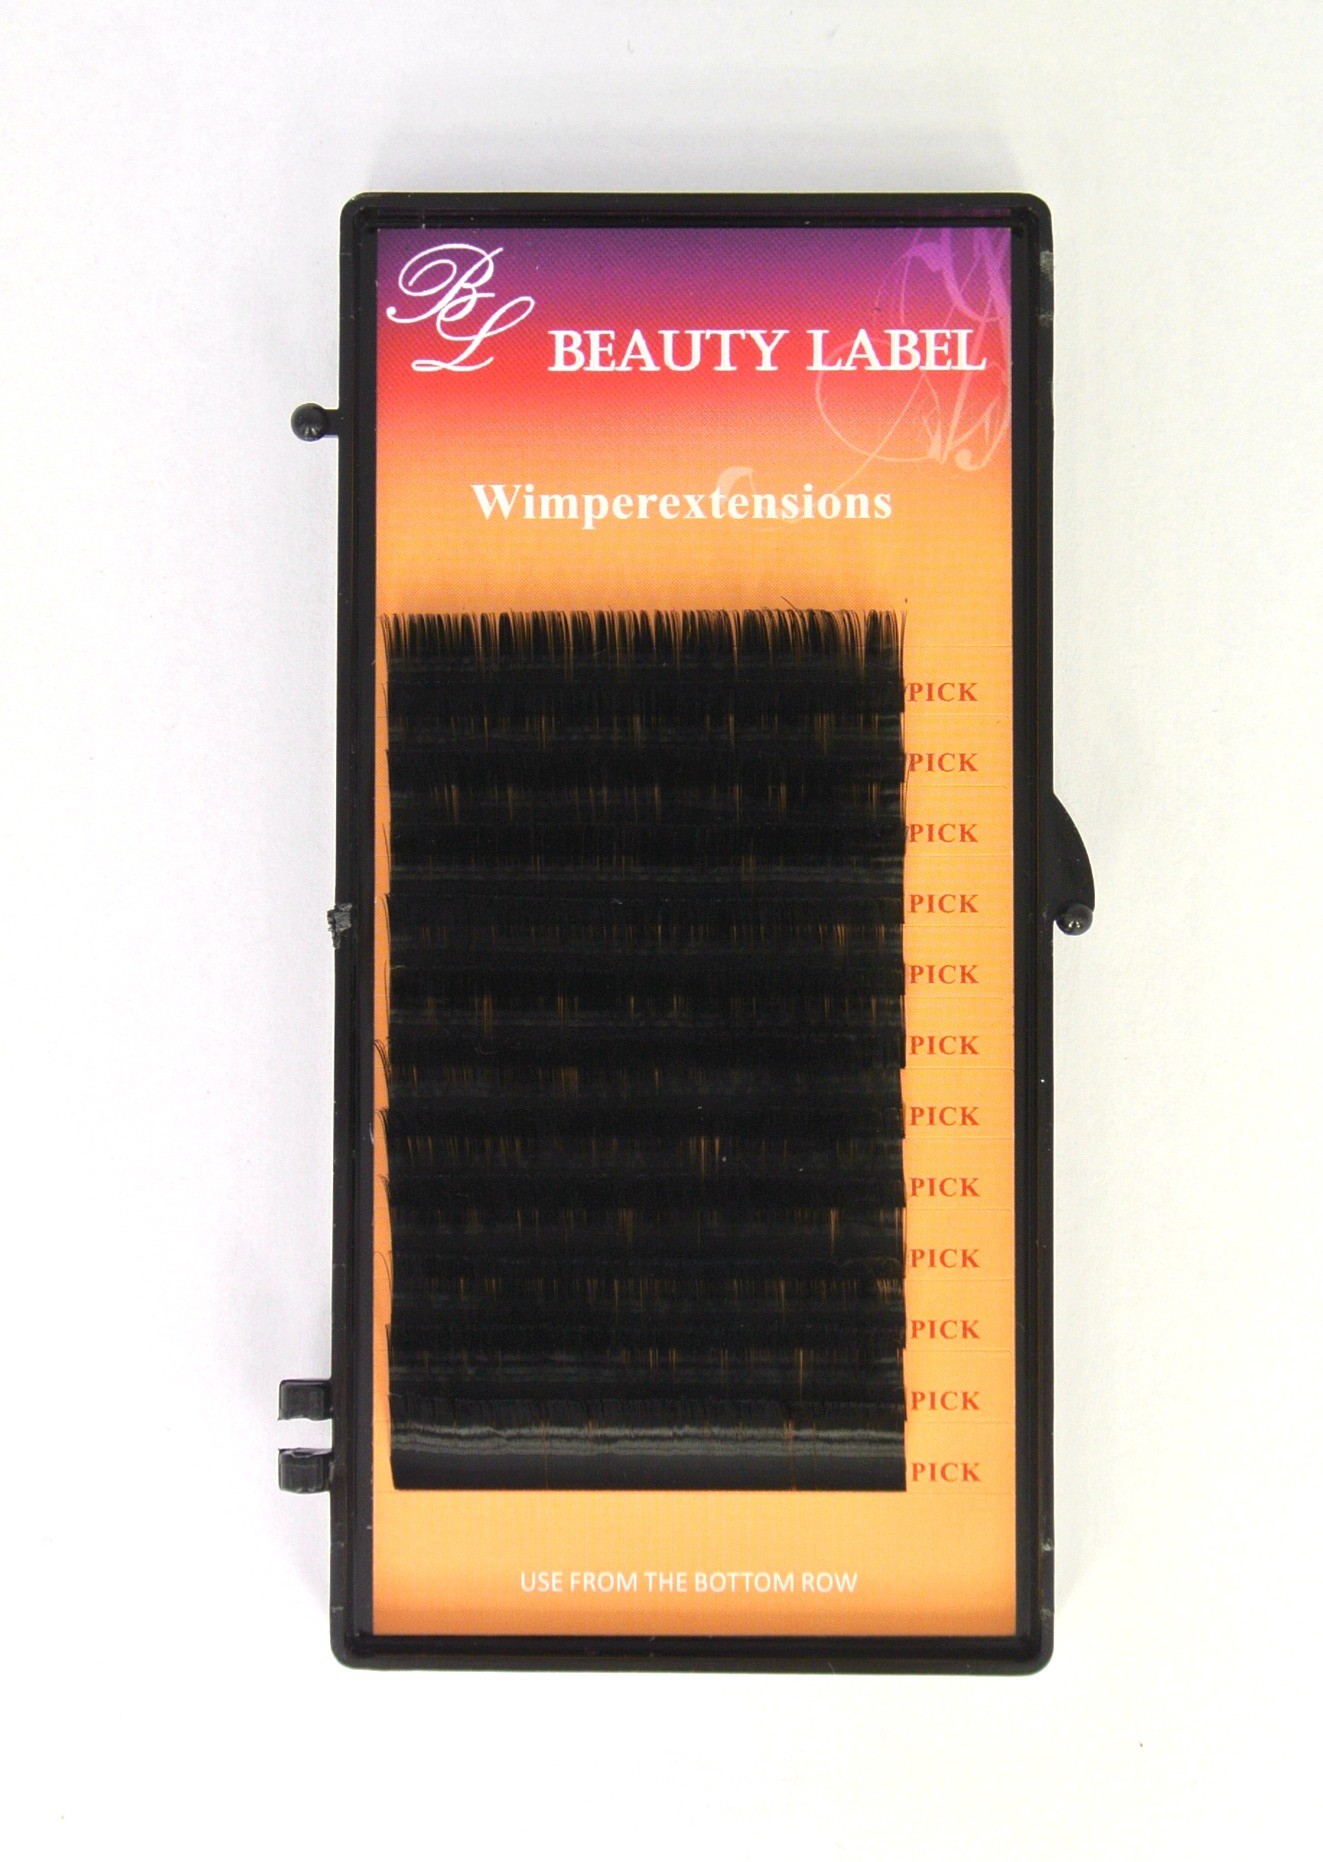 Beauty Label C krul silk coating super zachte volume wimpers voor de proffesionele wimperstyliste te gebruiken.